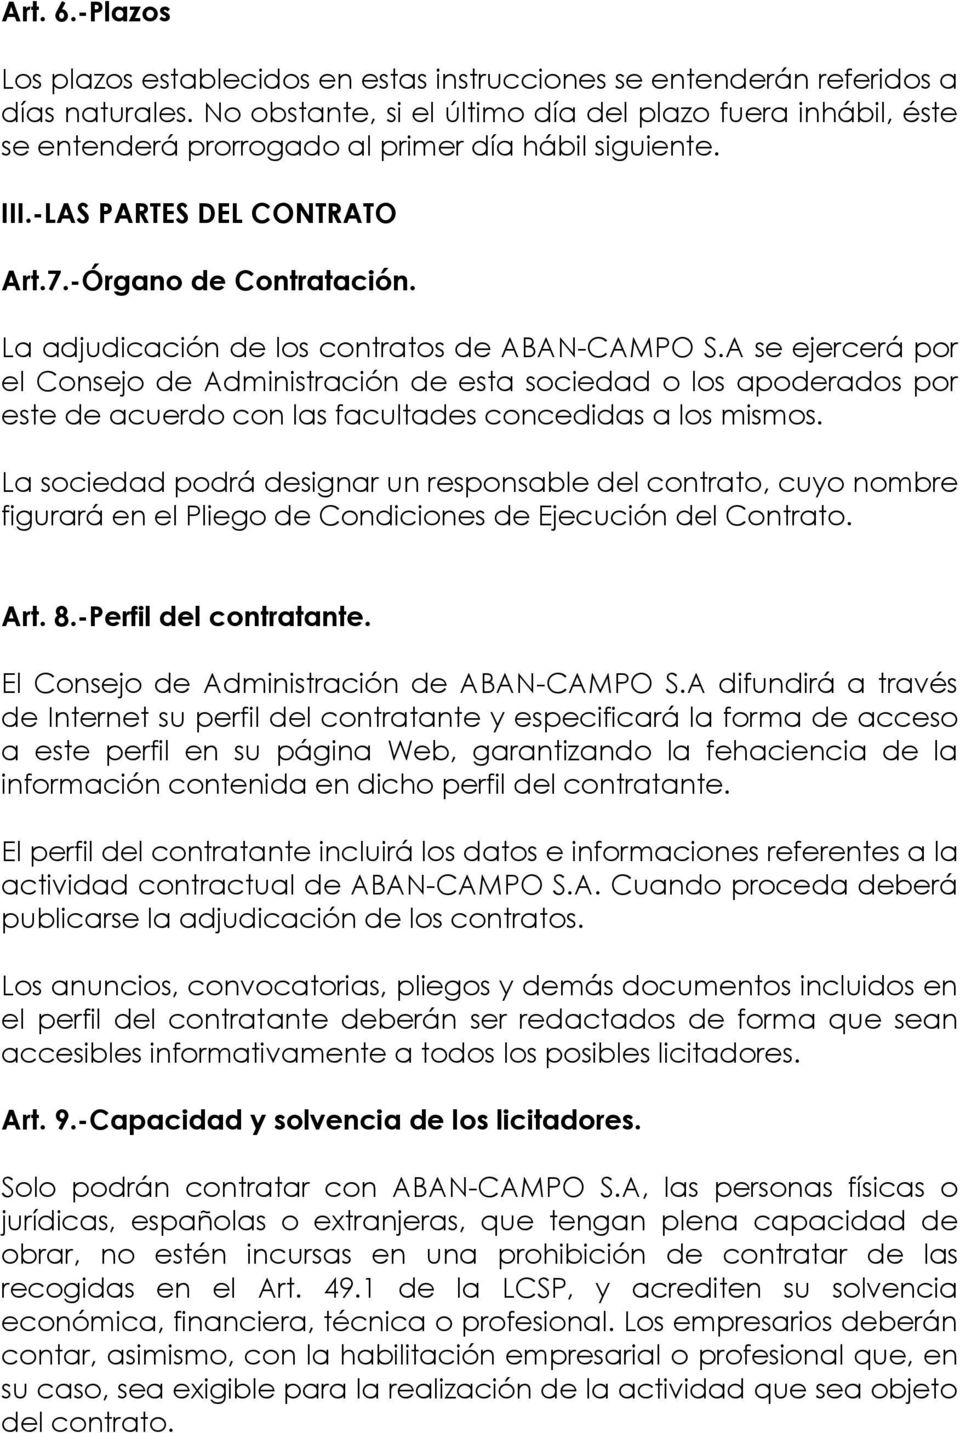 La adjudicación de los contratos de ABAN-CAMPO S.A se ejercerá por el Consejo de Administración de esta sociedad o los apoderados por este de acuerdo con las facultades concedidas a los mismos.